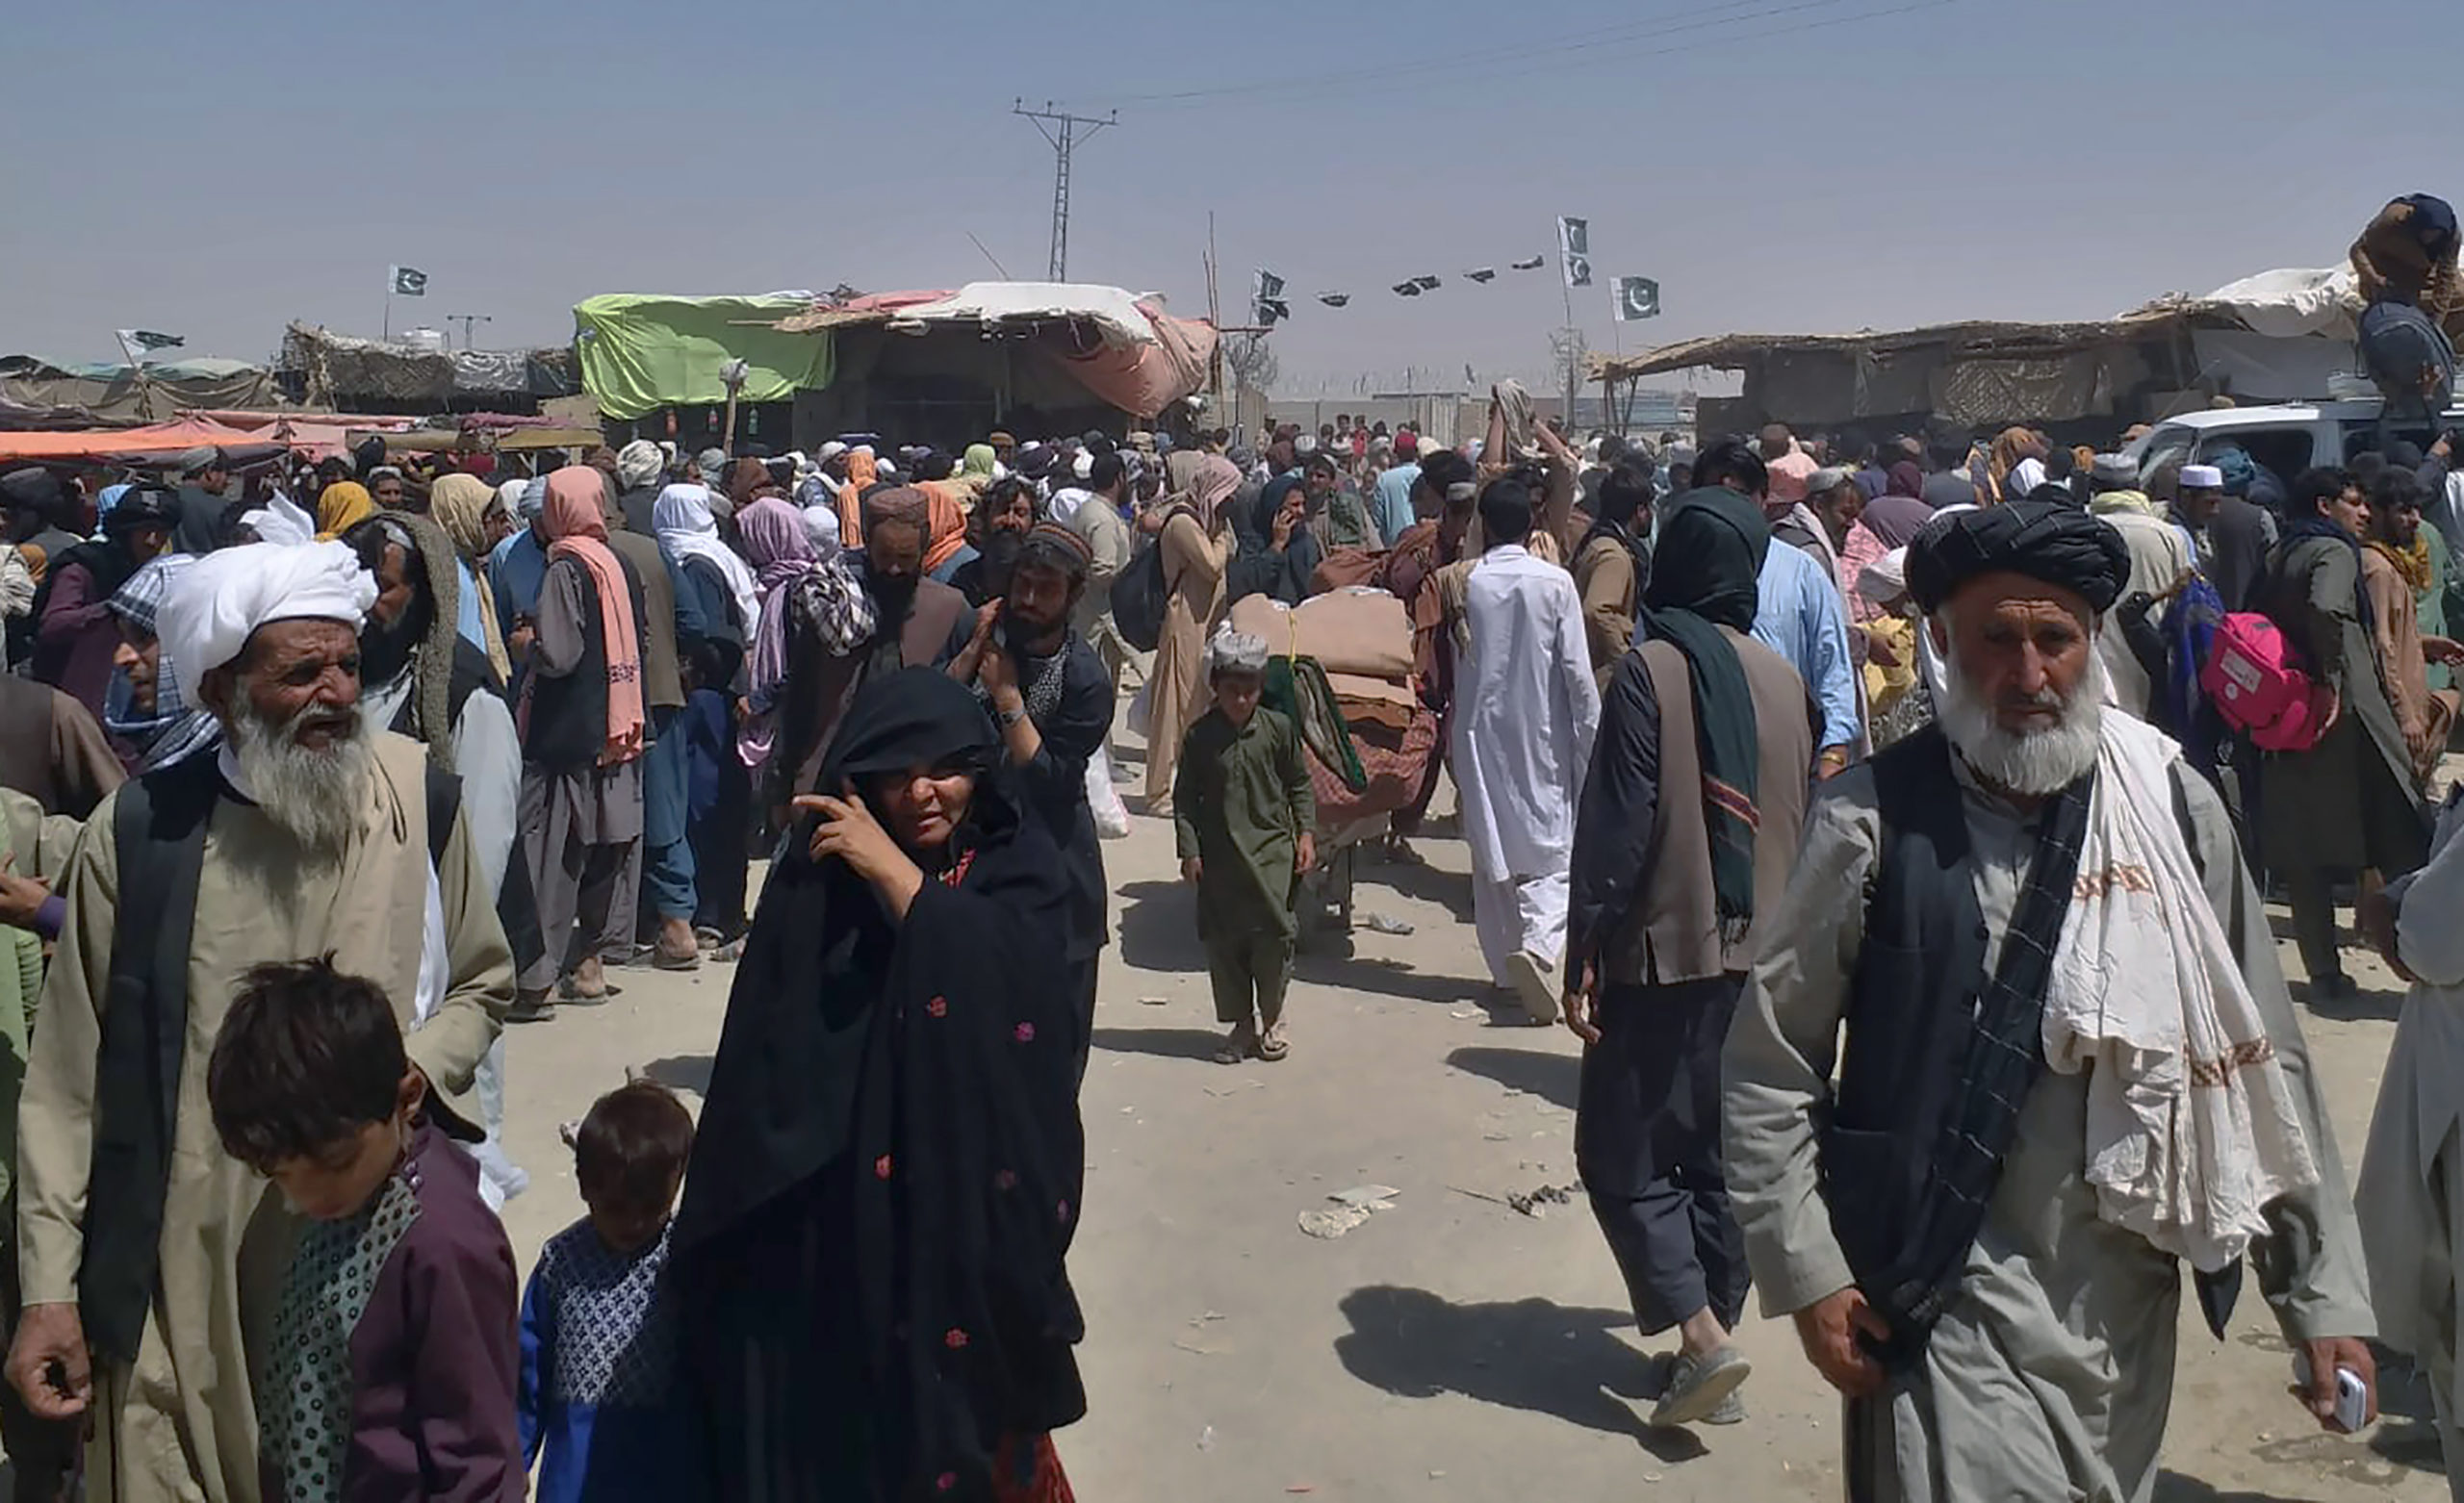 Eordaialive.com - Τα Νέα της Πτολεμαΐδας, Εορδαίας, Κοζάνης Αφγανιστάν: Πού θα πάνε οι πρόσφυγες μετά την κατάληψη της χώρας από τους Ταλιμπάν;